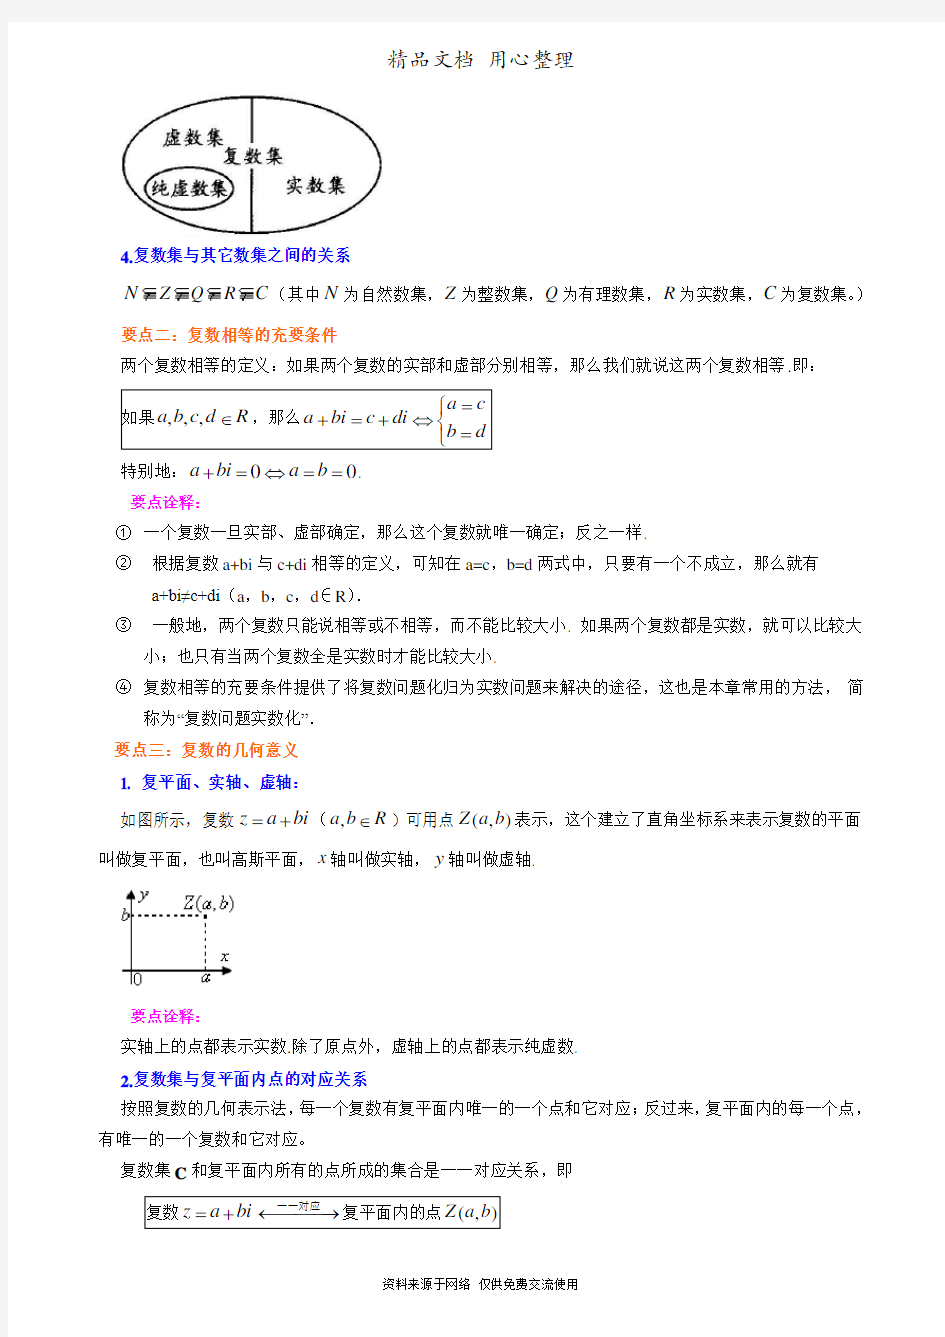 人教版高中数学【选修2-2】[知识点整理及重点题型梳理] 数系的扩充与复数的概念(理)